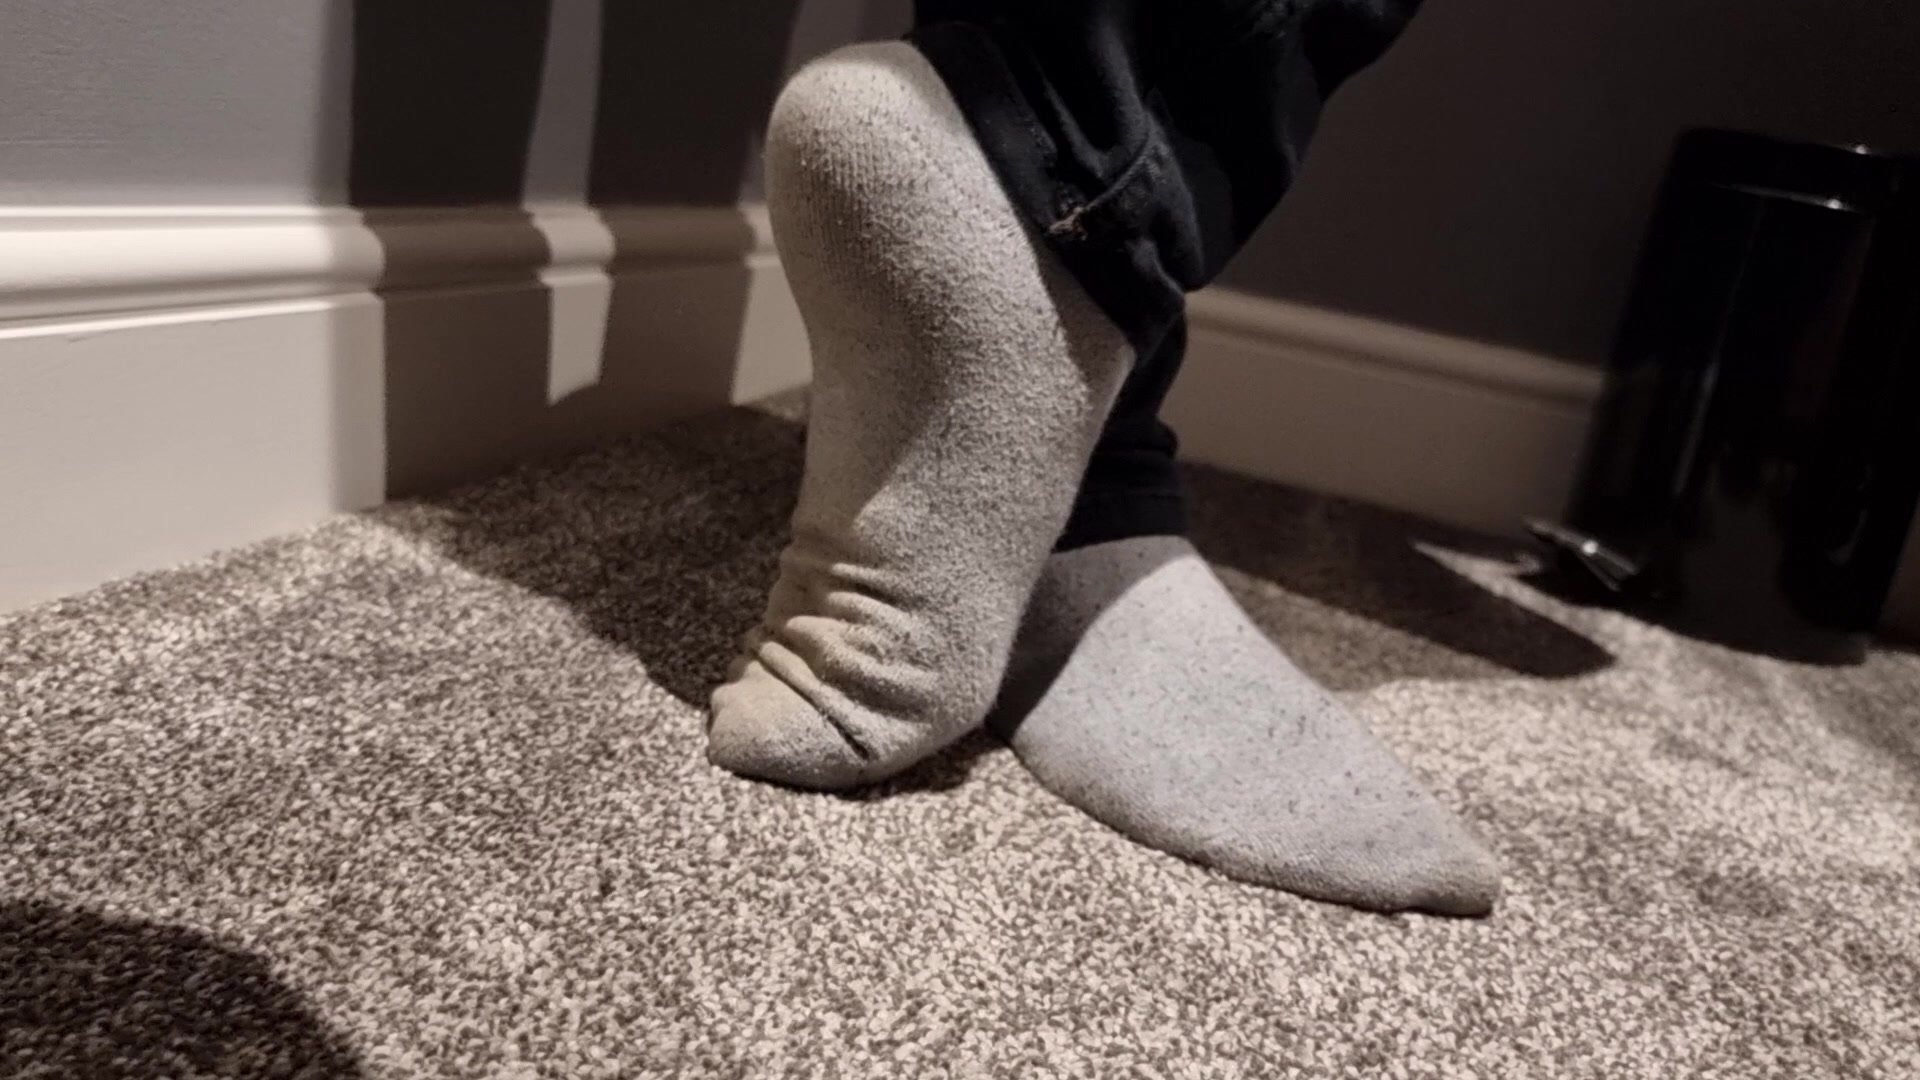 Candid dirty grey socks